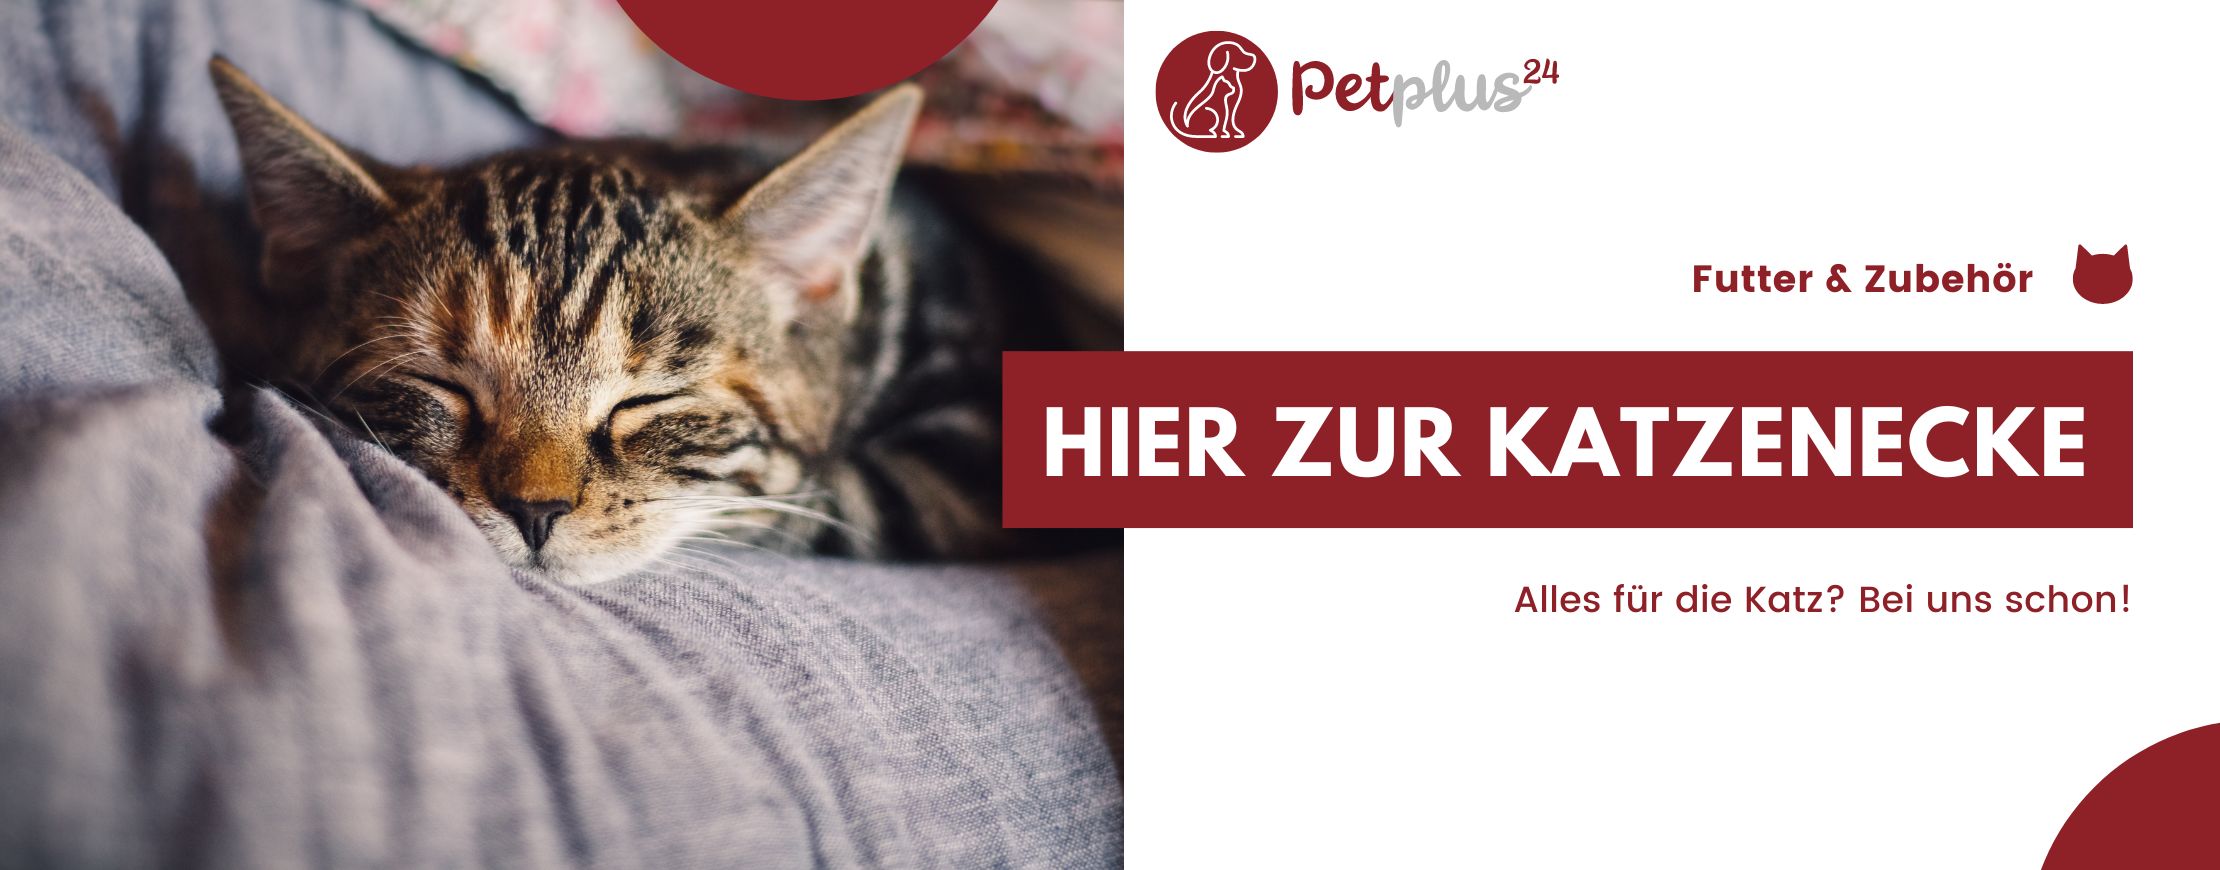 Katzenfutter, Katzen-Trockenfutter,Katzen-Nassfutter,Snacks für Katzen,Petplus24